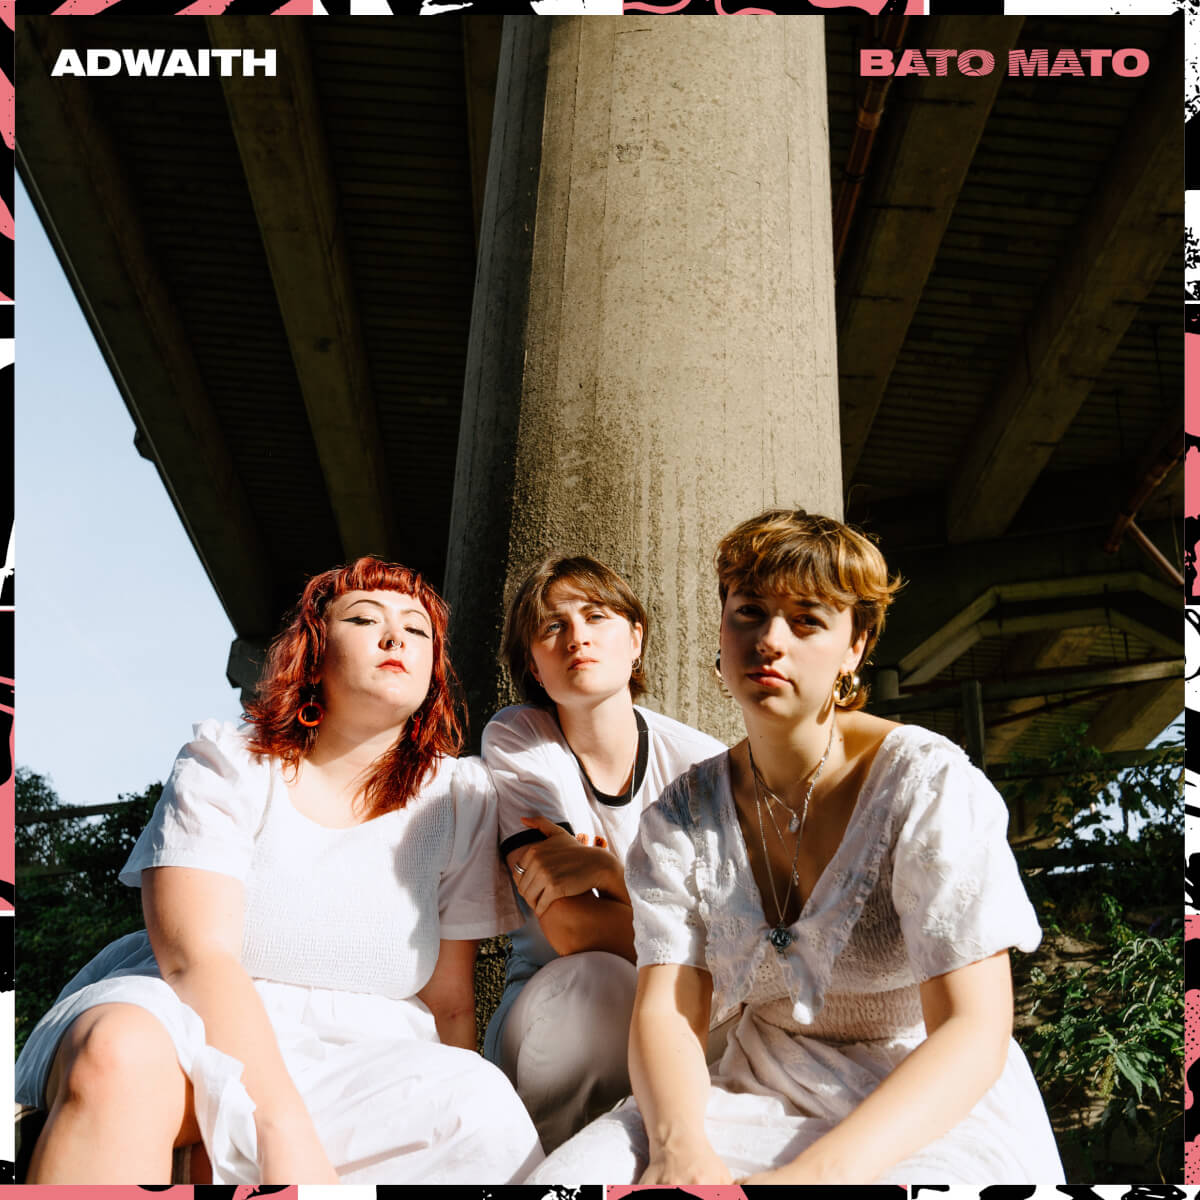 Adwaith - Bato Mato (Libertino Records) 1